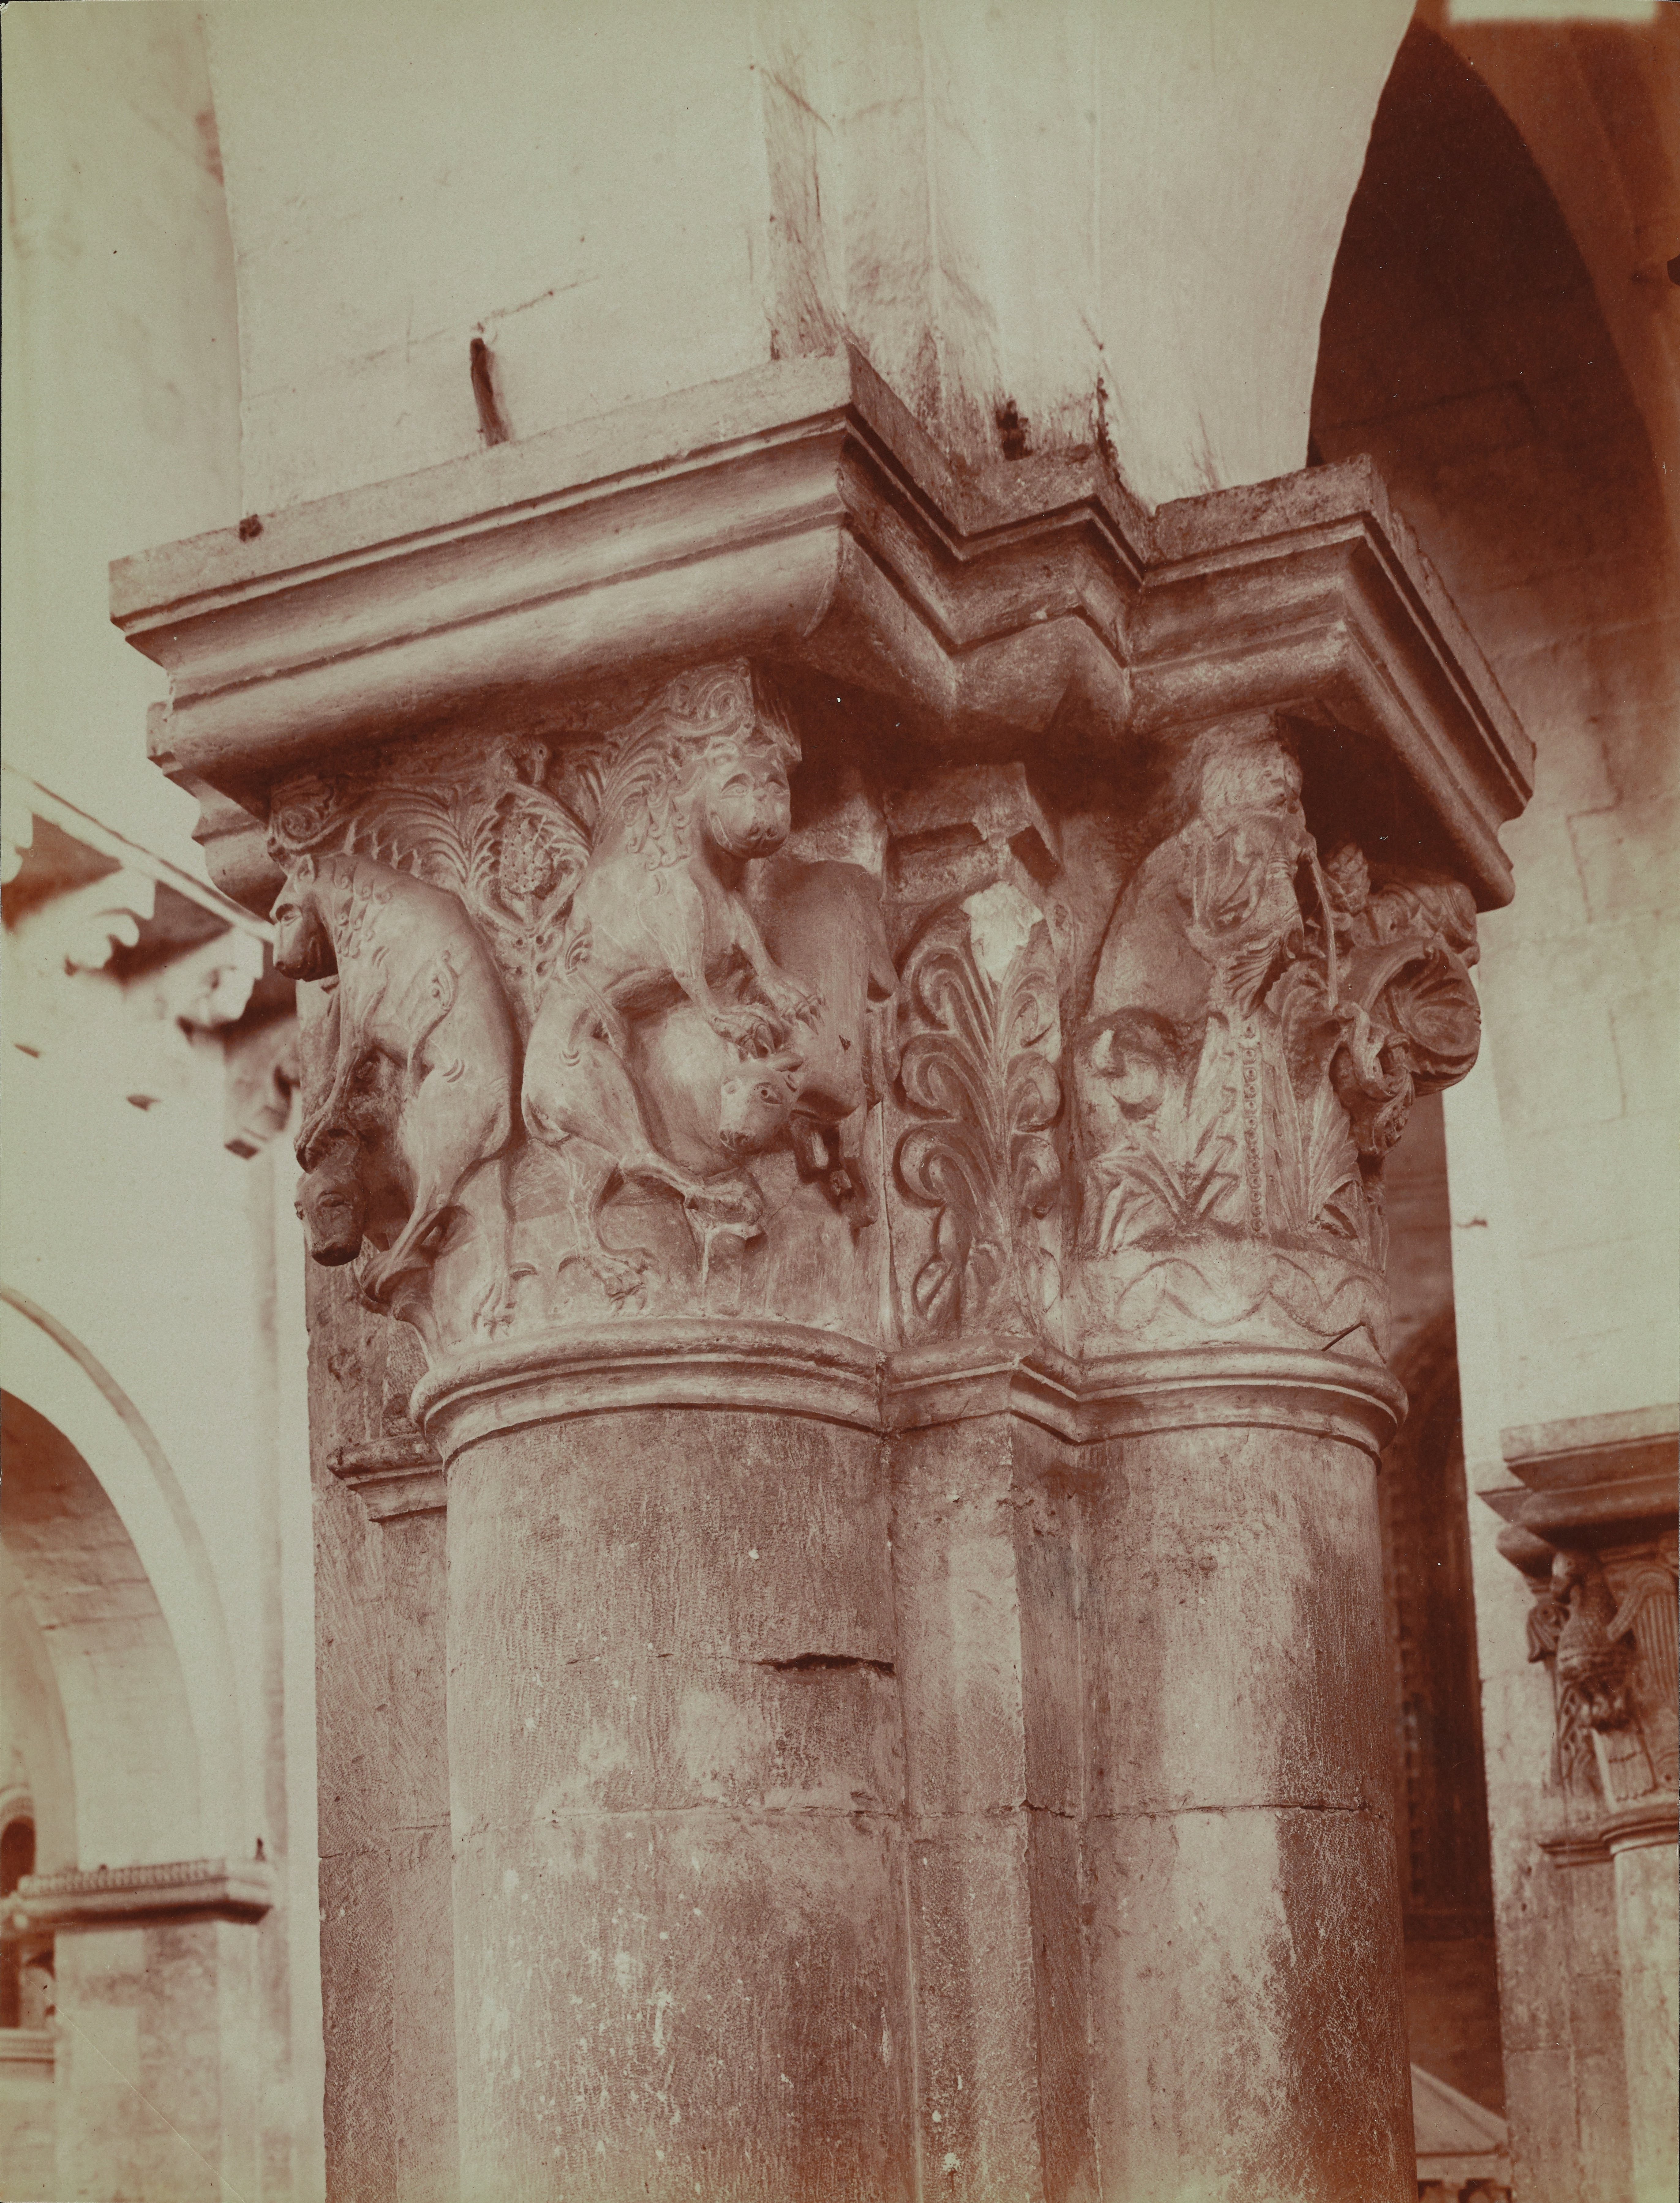 Fotografo non identificato, Ruvo di Puglia - Cattedrale S. Maria Assunta, interno, capitello scolpito, 1901-1910, albumina, MPI6091668